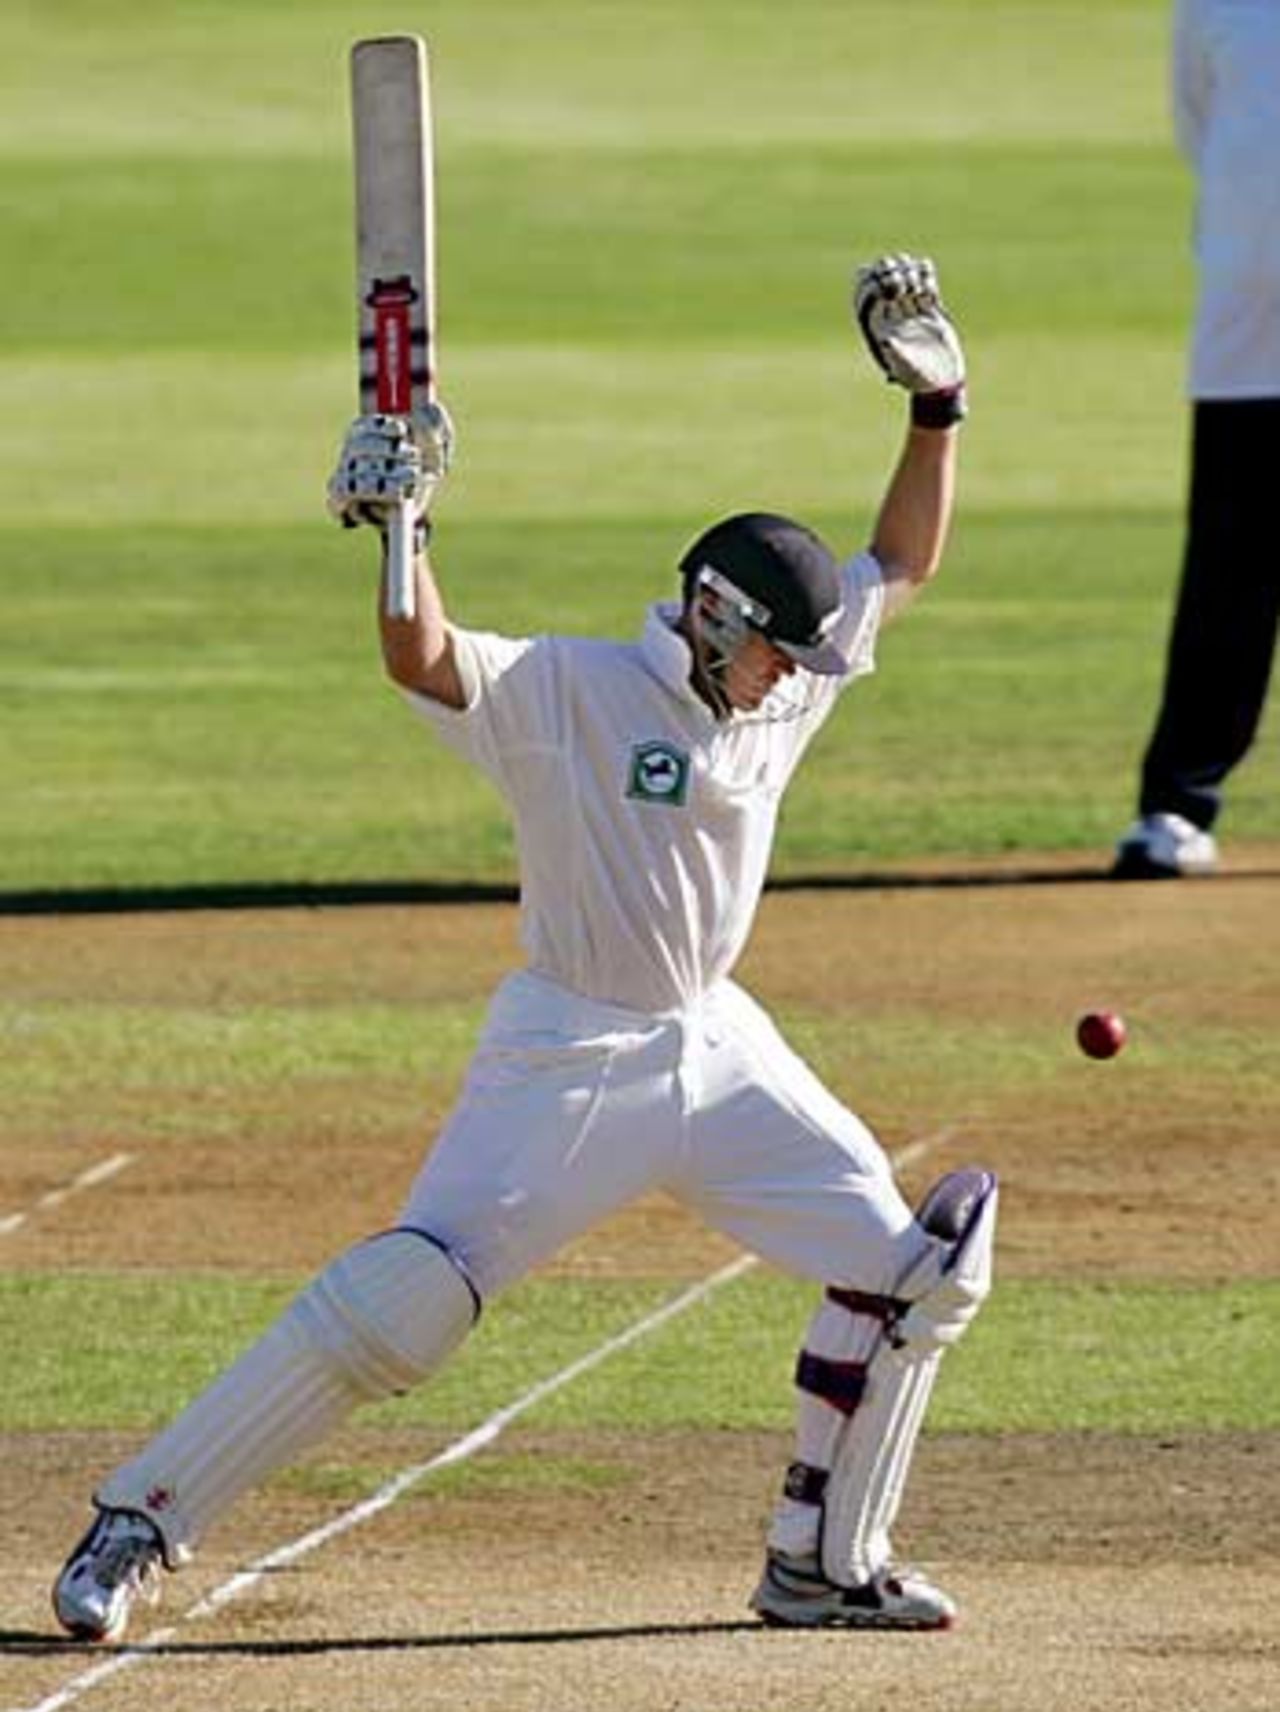 Look, no hands ... Lou Vincent plays spin, New Zealand v Sri Lanka, 2nd Test, Wellington, April 12, 2005